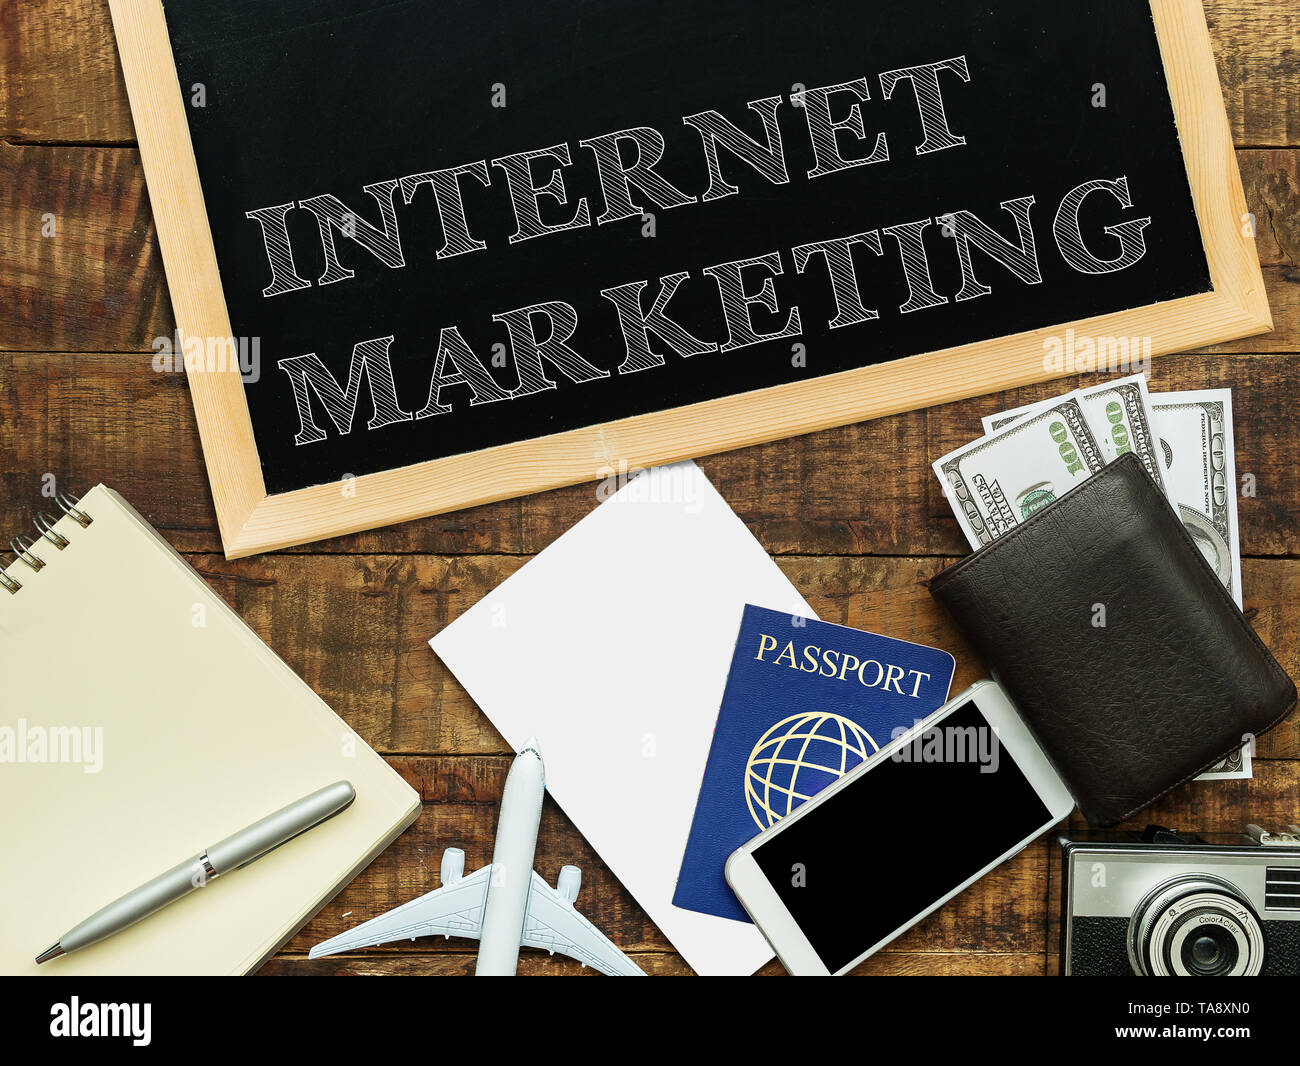 Internet marketing scritta a mano con il bianco gesso su una lavagna, denaro wallet , notebook e smartphone su un sfondo di legno Foto Stock